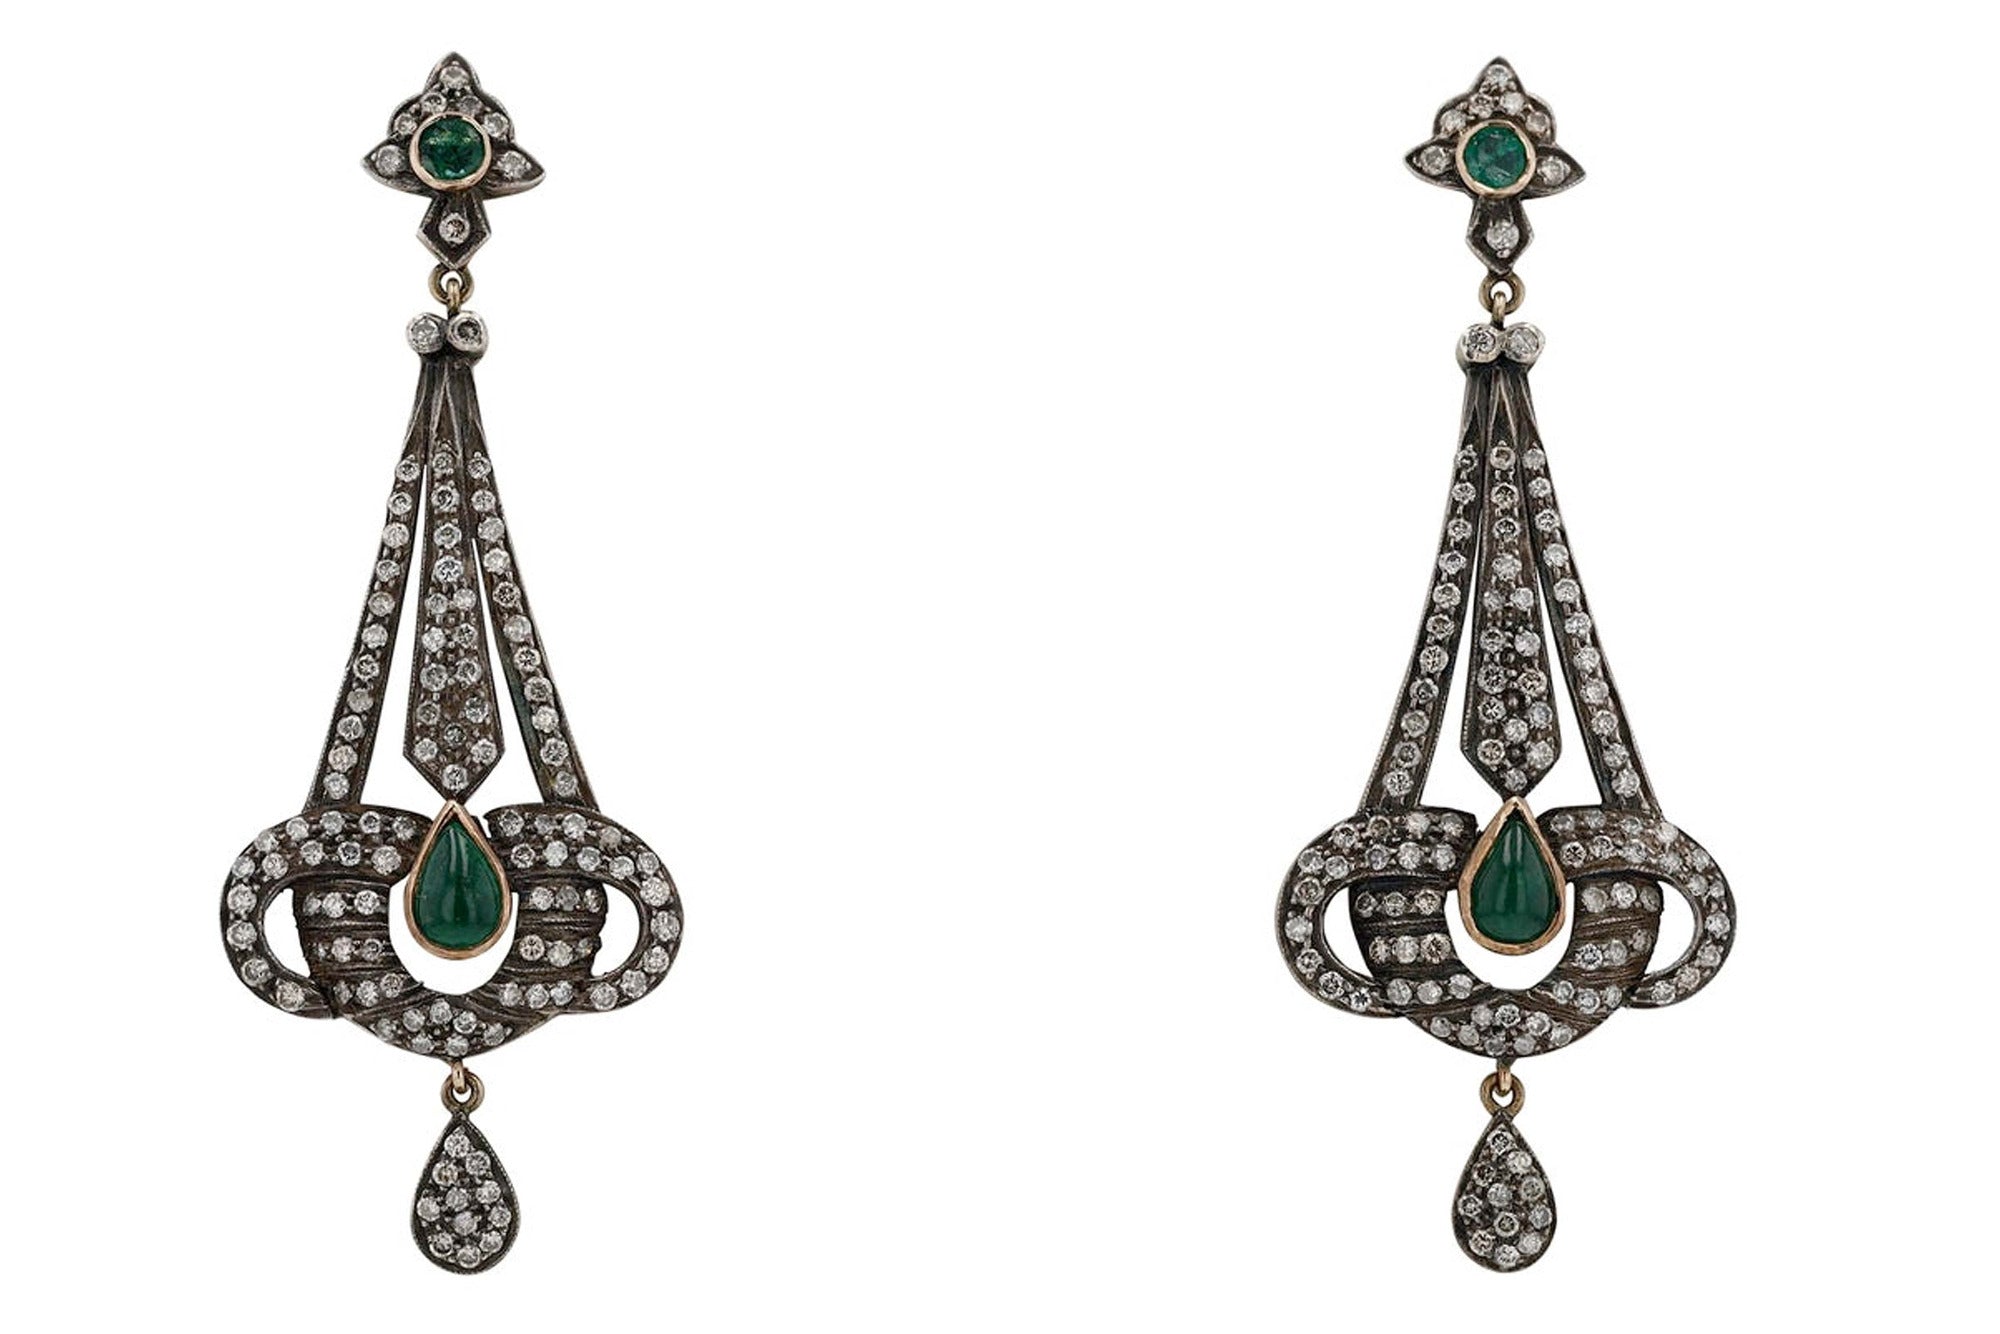 Victorian Revival Chandelier Earrings